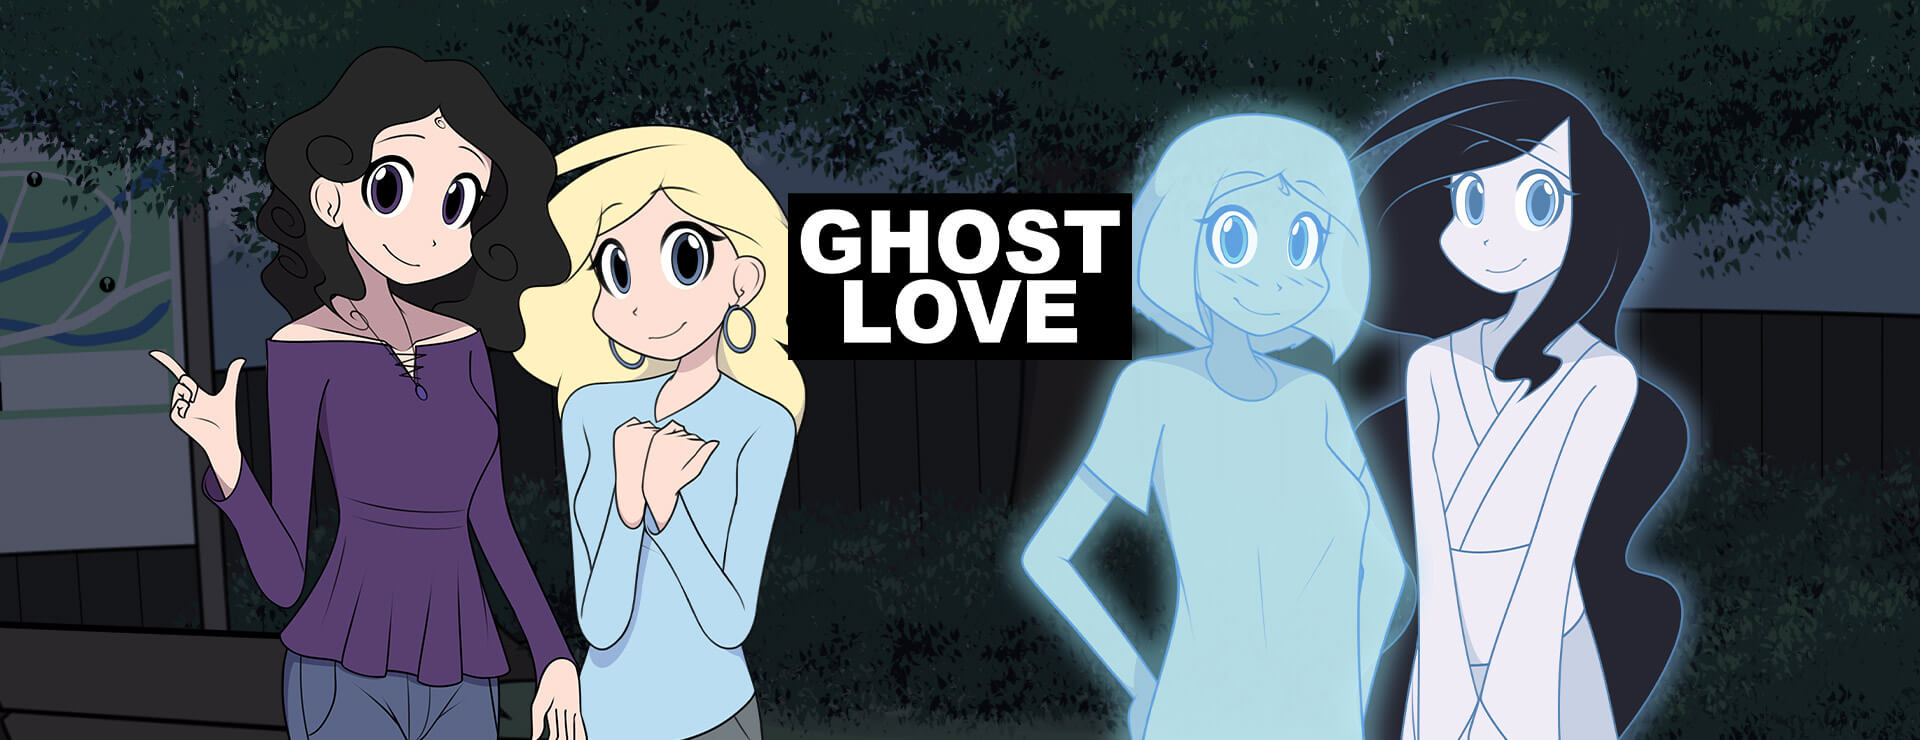 Ghost Love - Japanisches Adventure Spiel